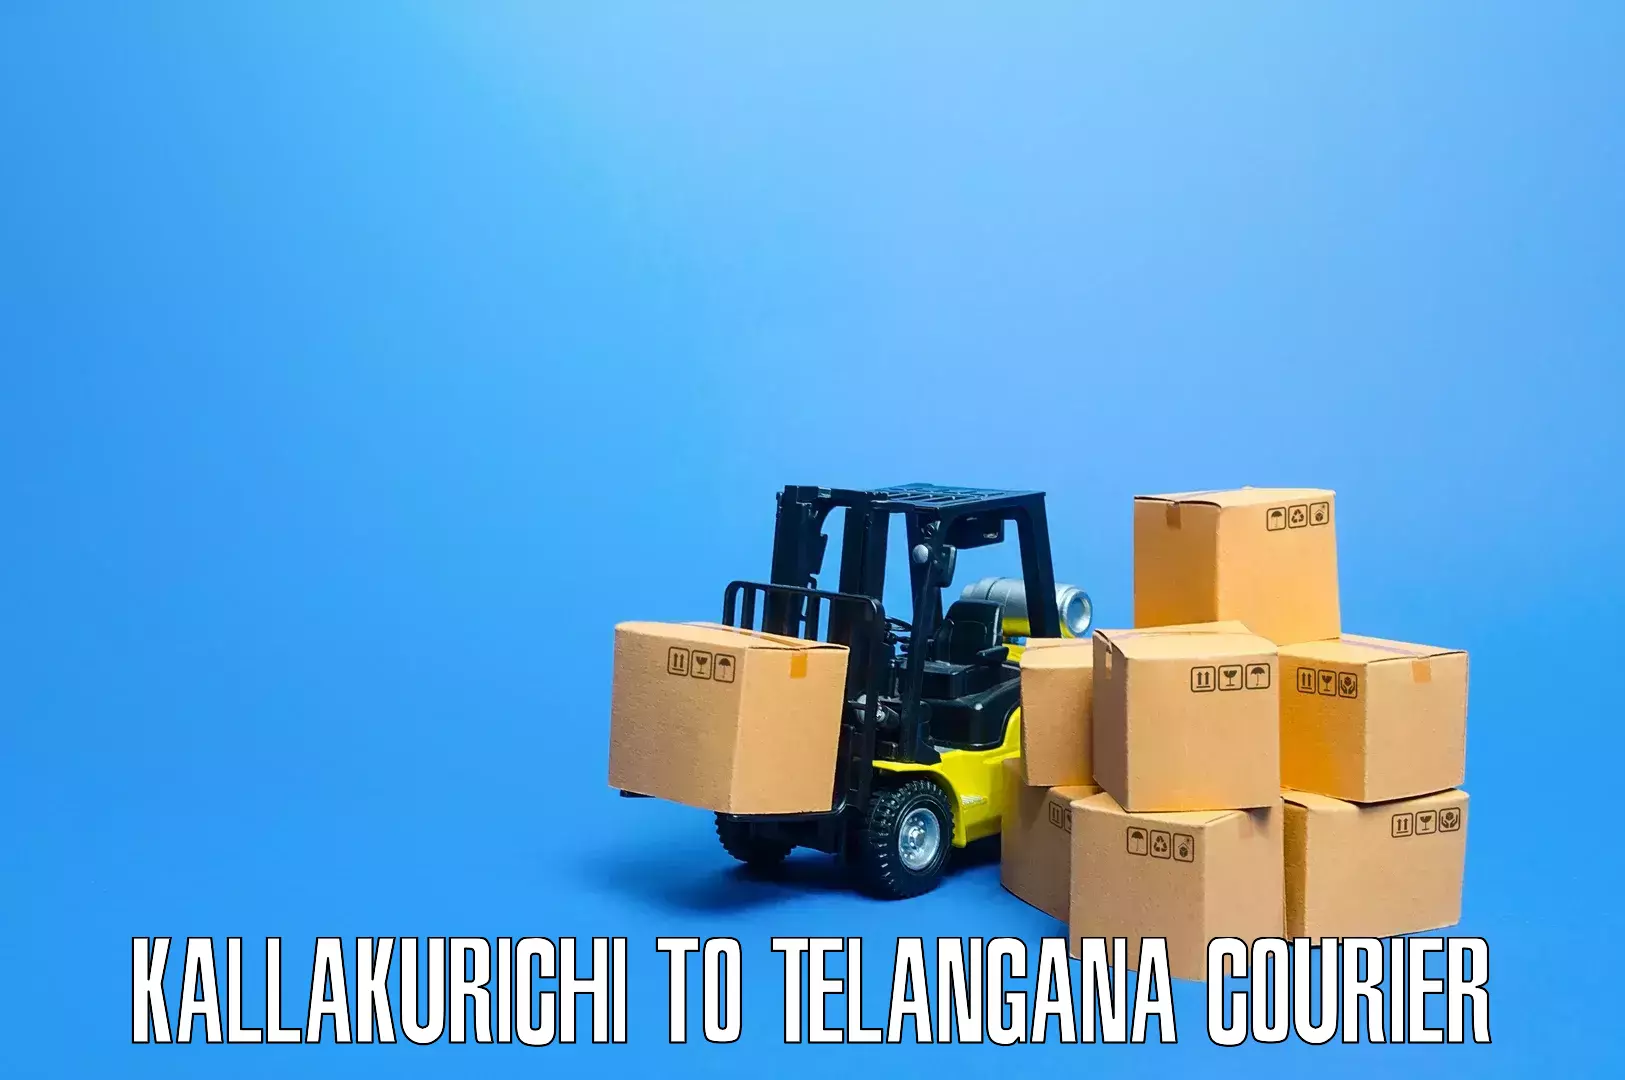 Residential moving experts Kallakurichi to Gangadhara